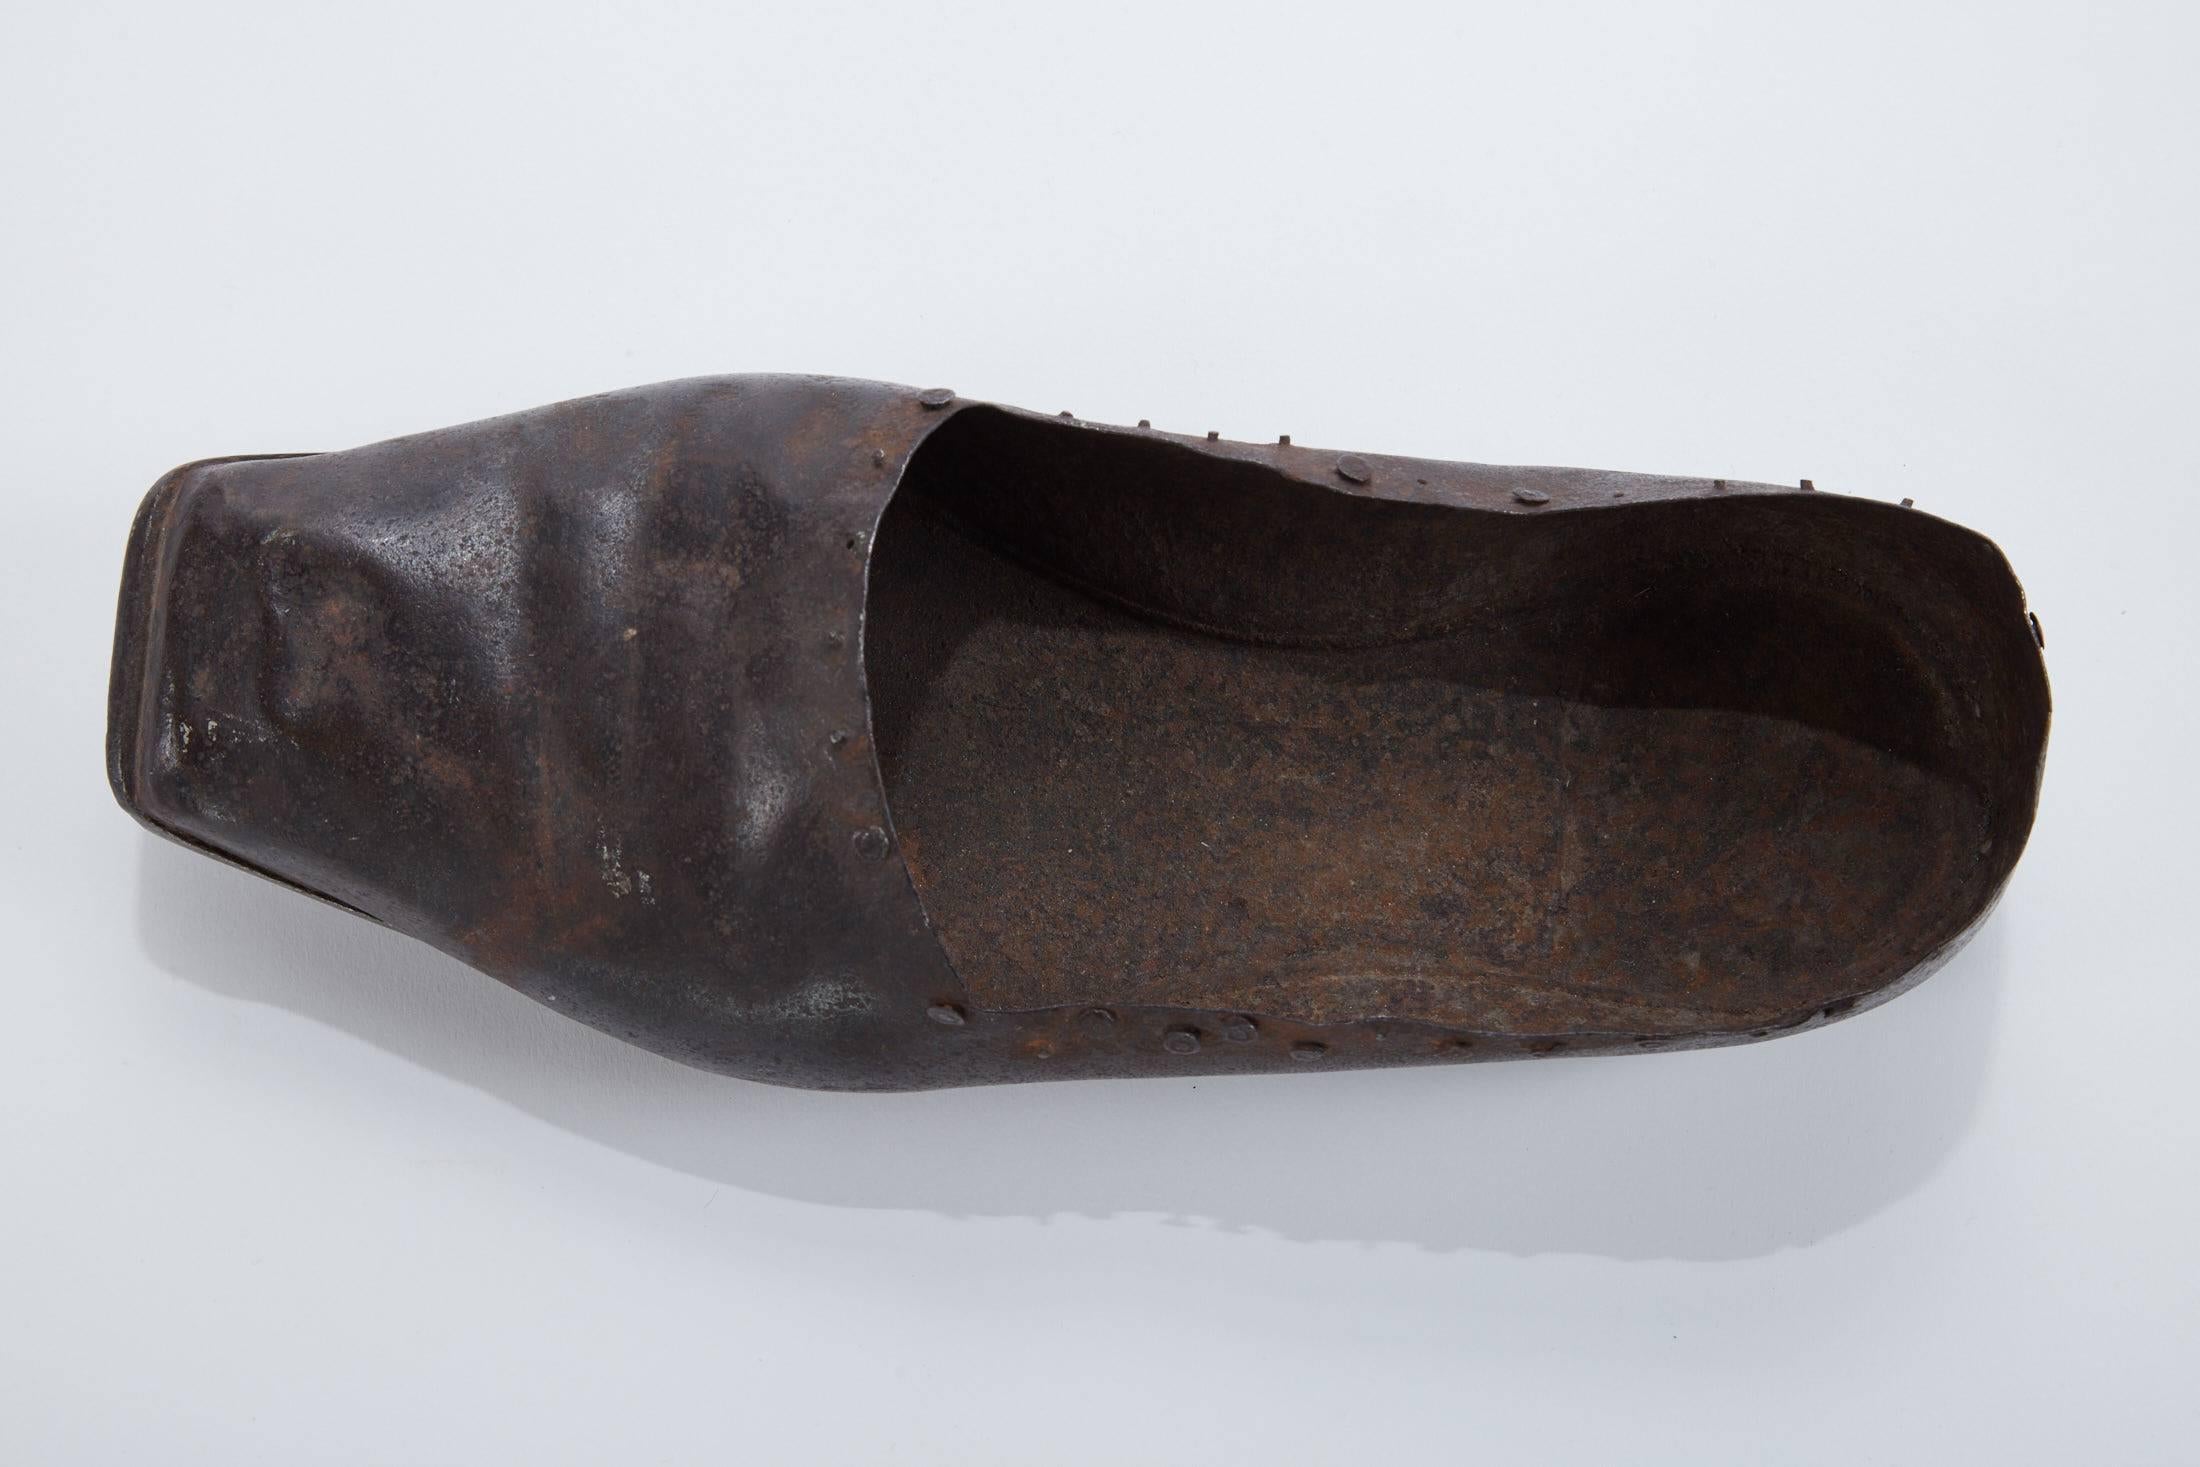 Handgeschmiedeter Eisenschuh aus dem späten 19. Jahrhundert, wahrscheinlich ein Conblers-Muster.
   